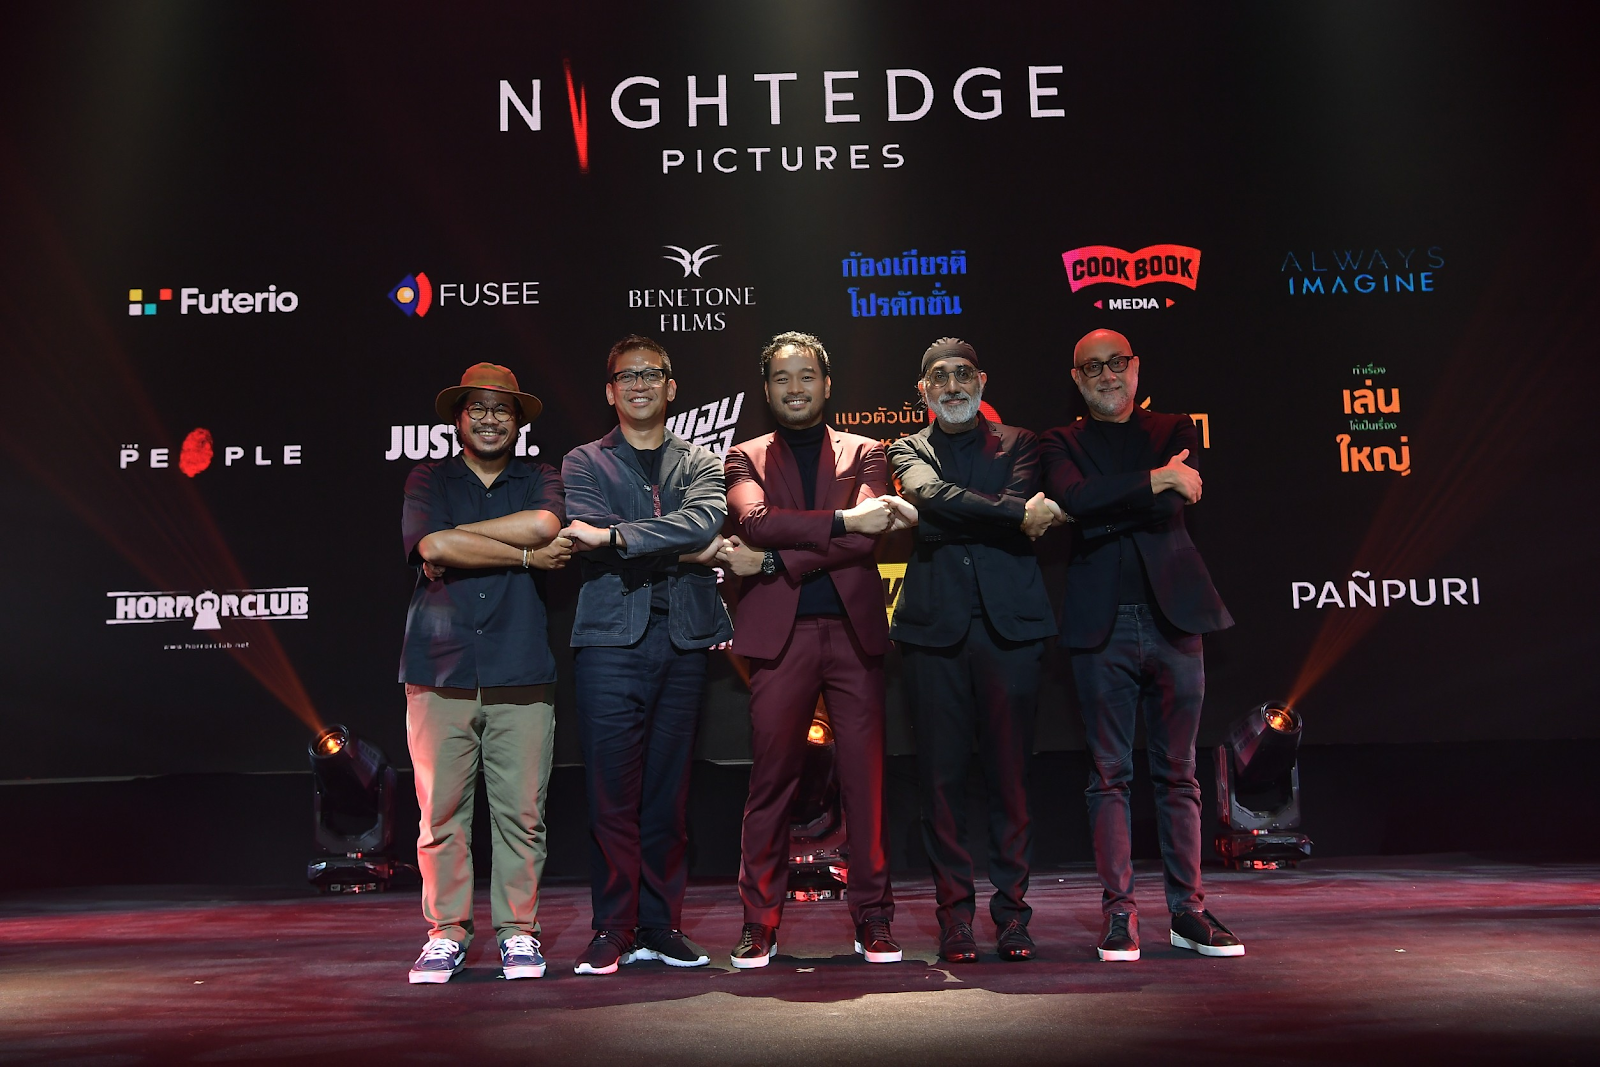 ฮานส์ เอสติอัลโบ: Night Edge Pictures ค่ายหนังที่จะยกระดับ ความสยองขวัญ ในไทย